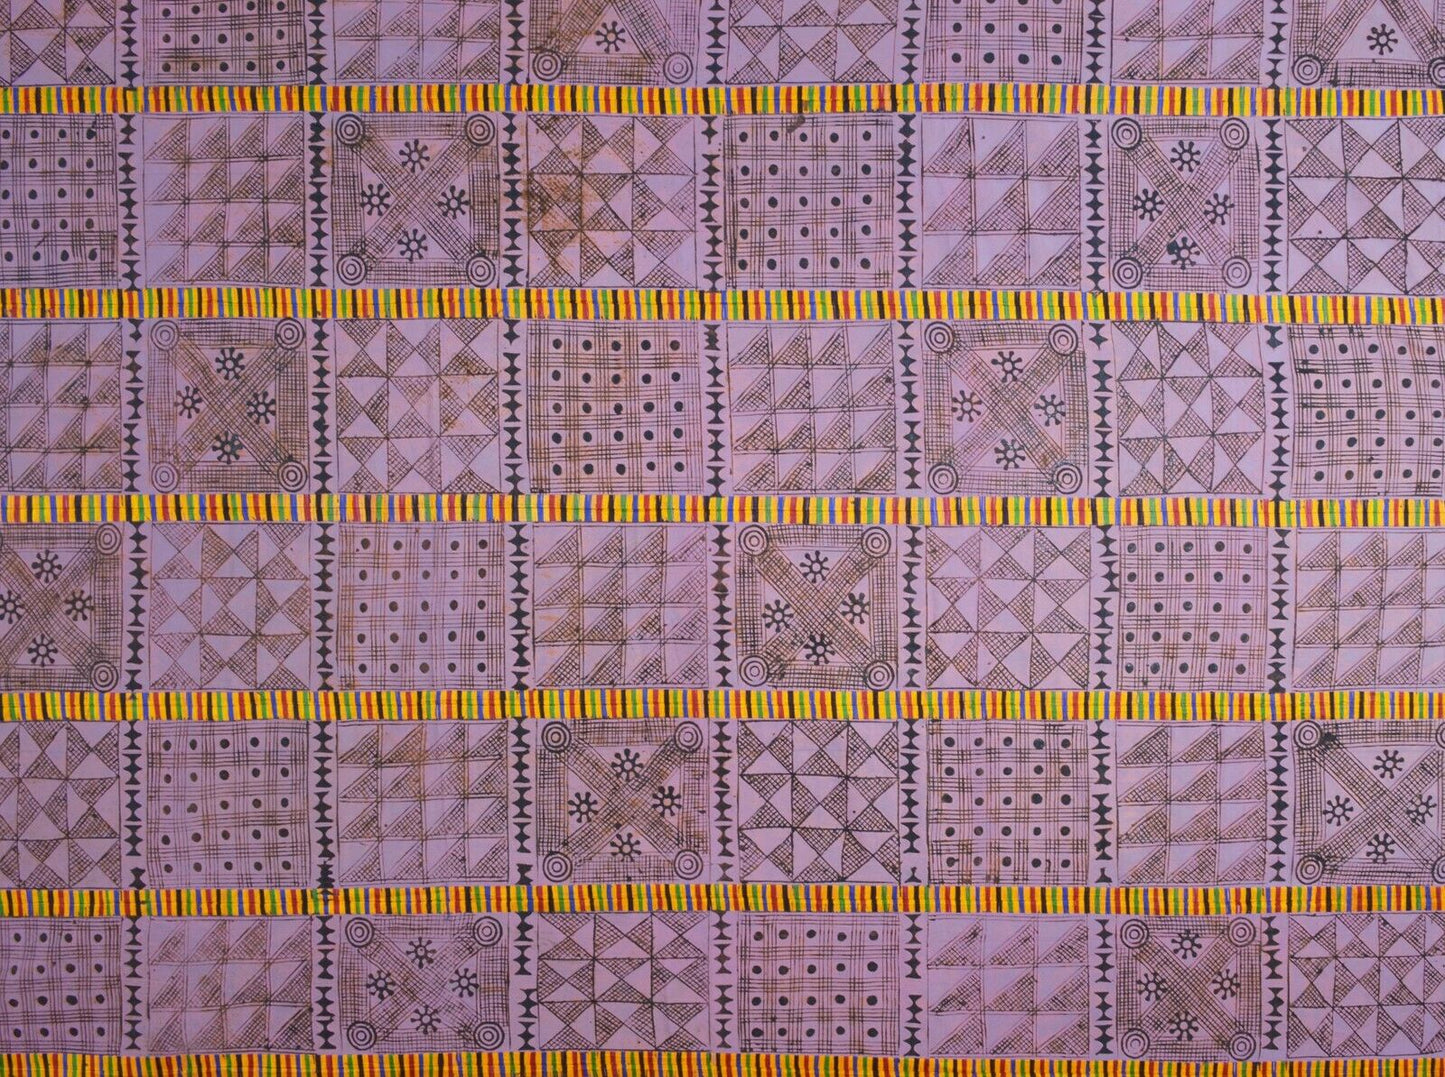 Разнообразие ткани с символами адинкра, Гана, африканская ручная печать - Трибалг